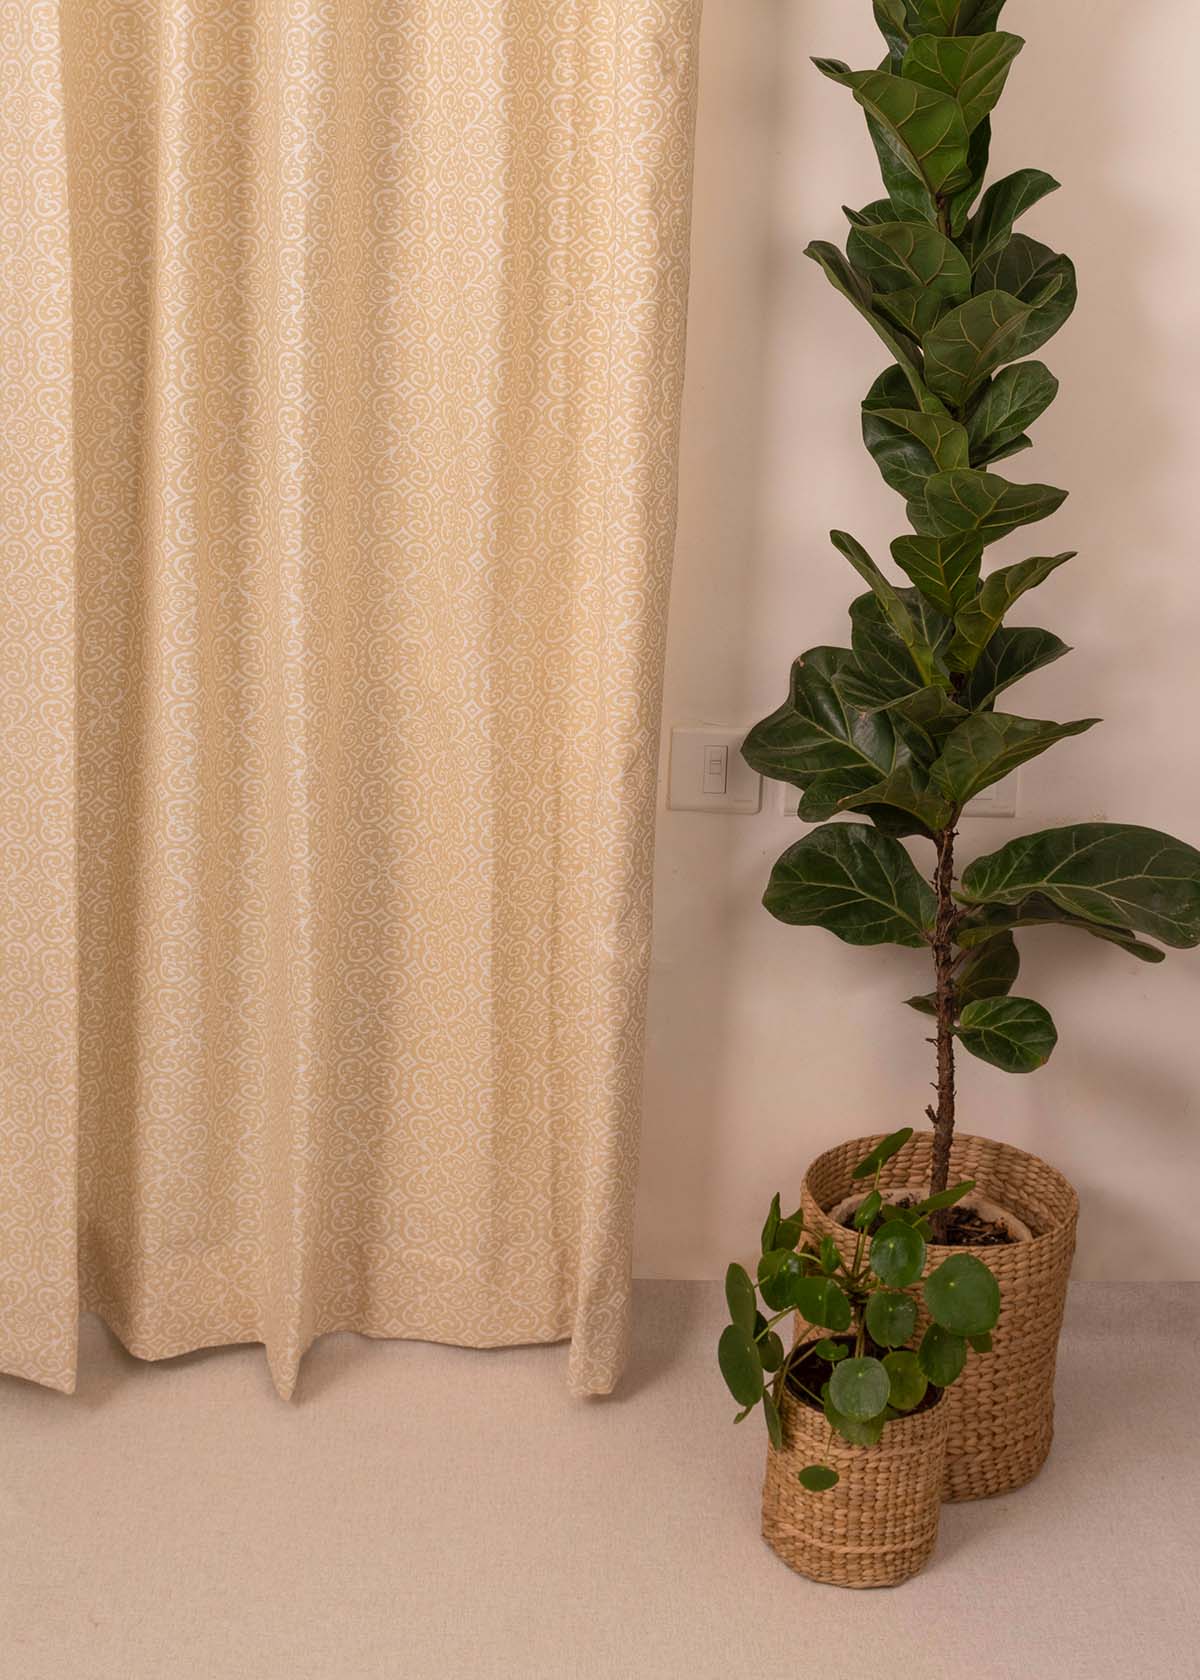 Antique Rose 100% Customizable Cotton minimal curtain for living room - Room darkening - Cream